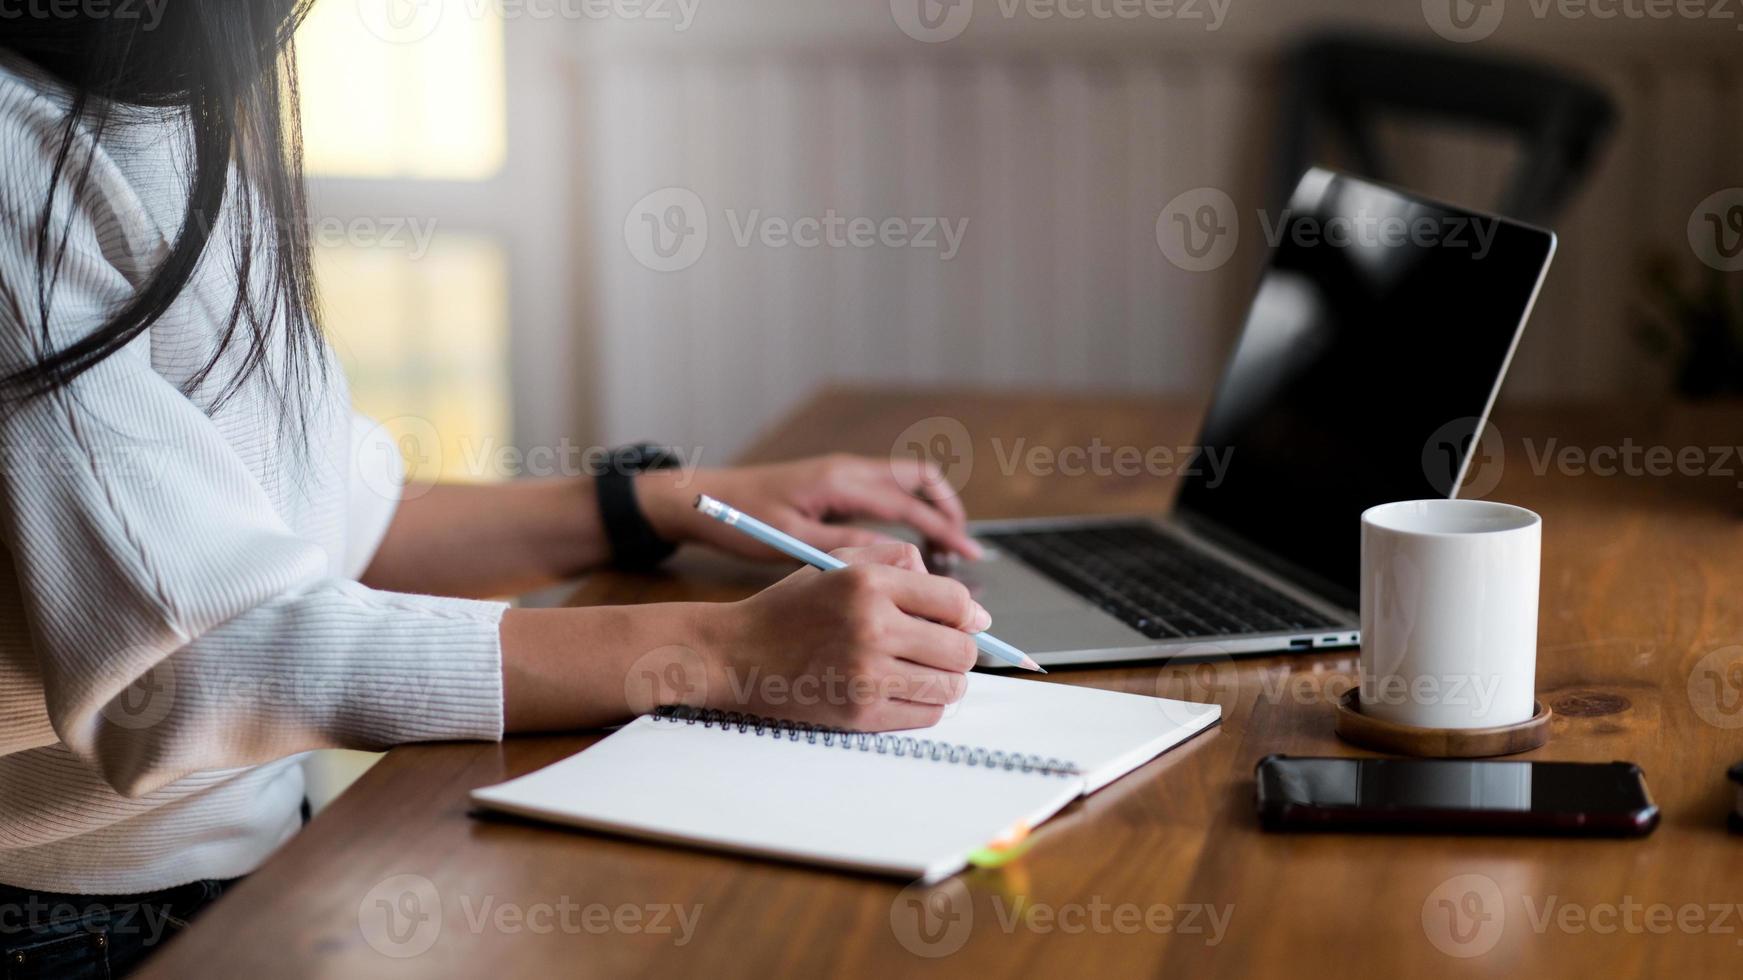 jonge vrouw werkt vanuit huis, ze gebruikt een laptop en maakt aantekeningen. foto